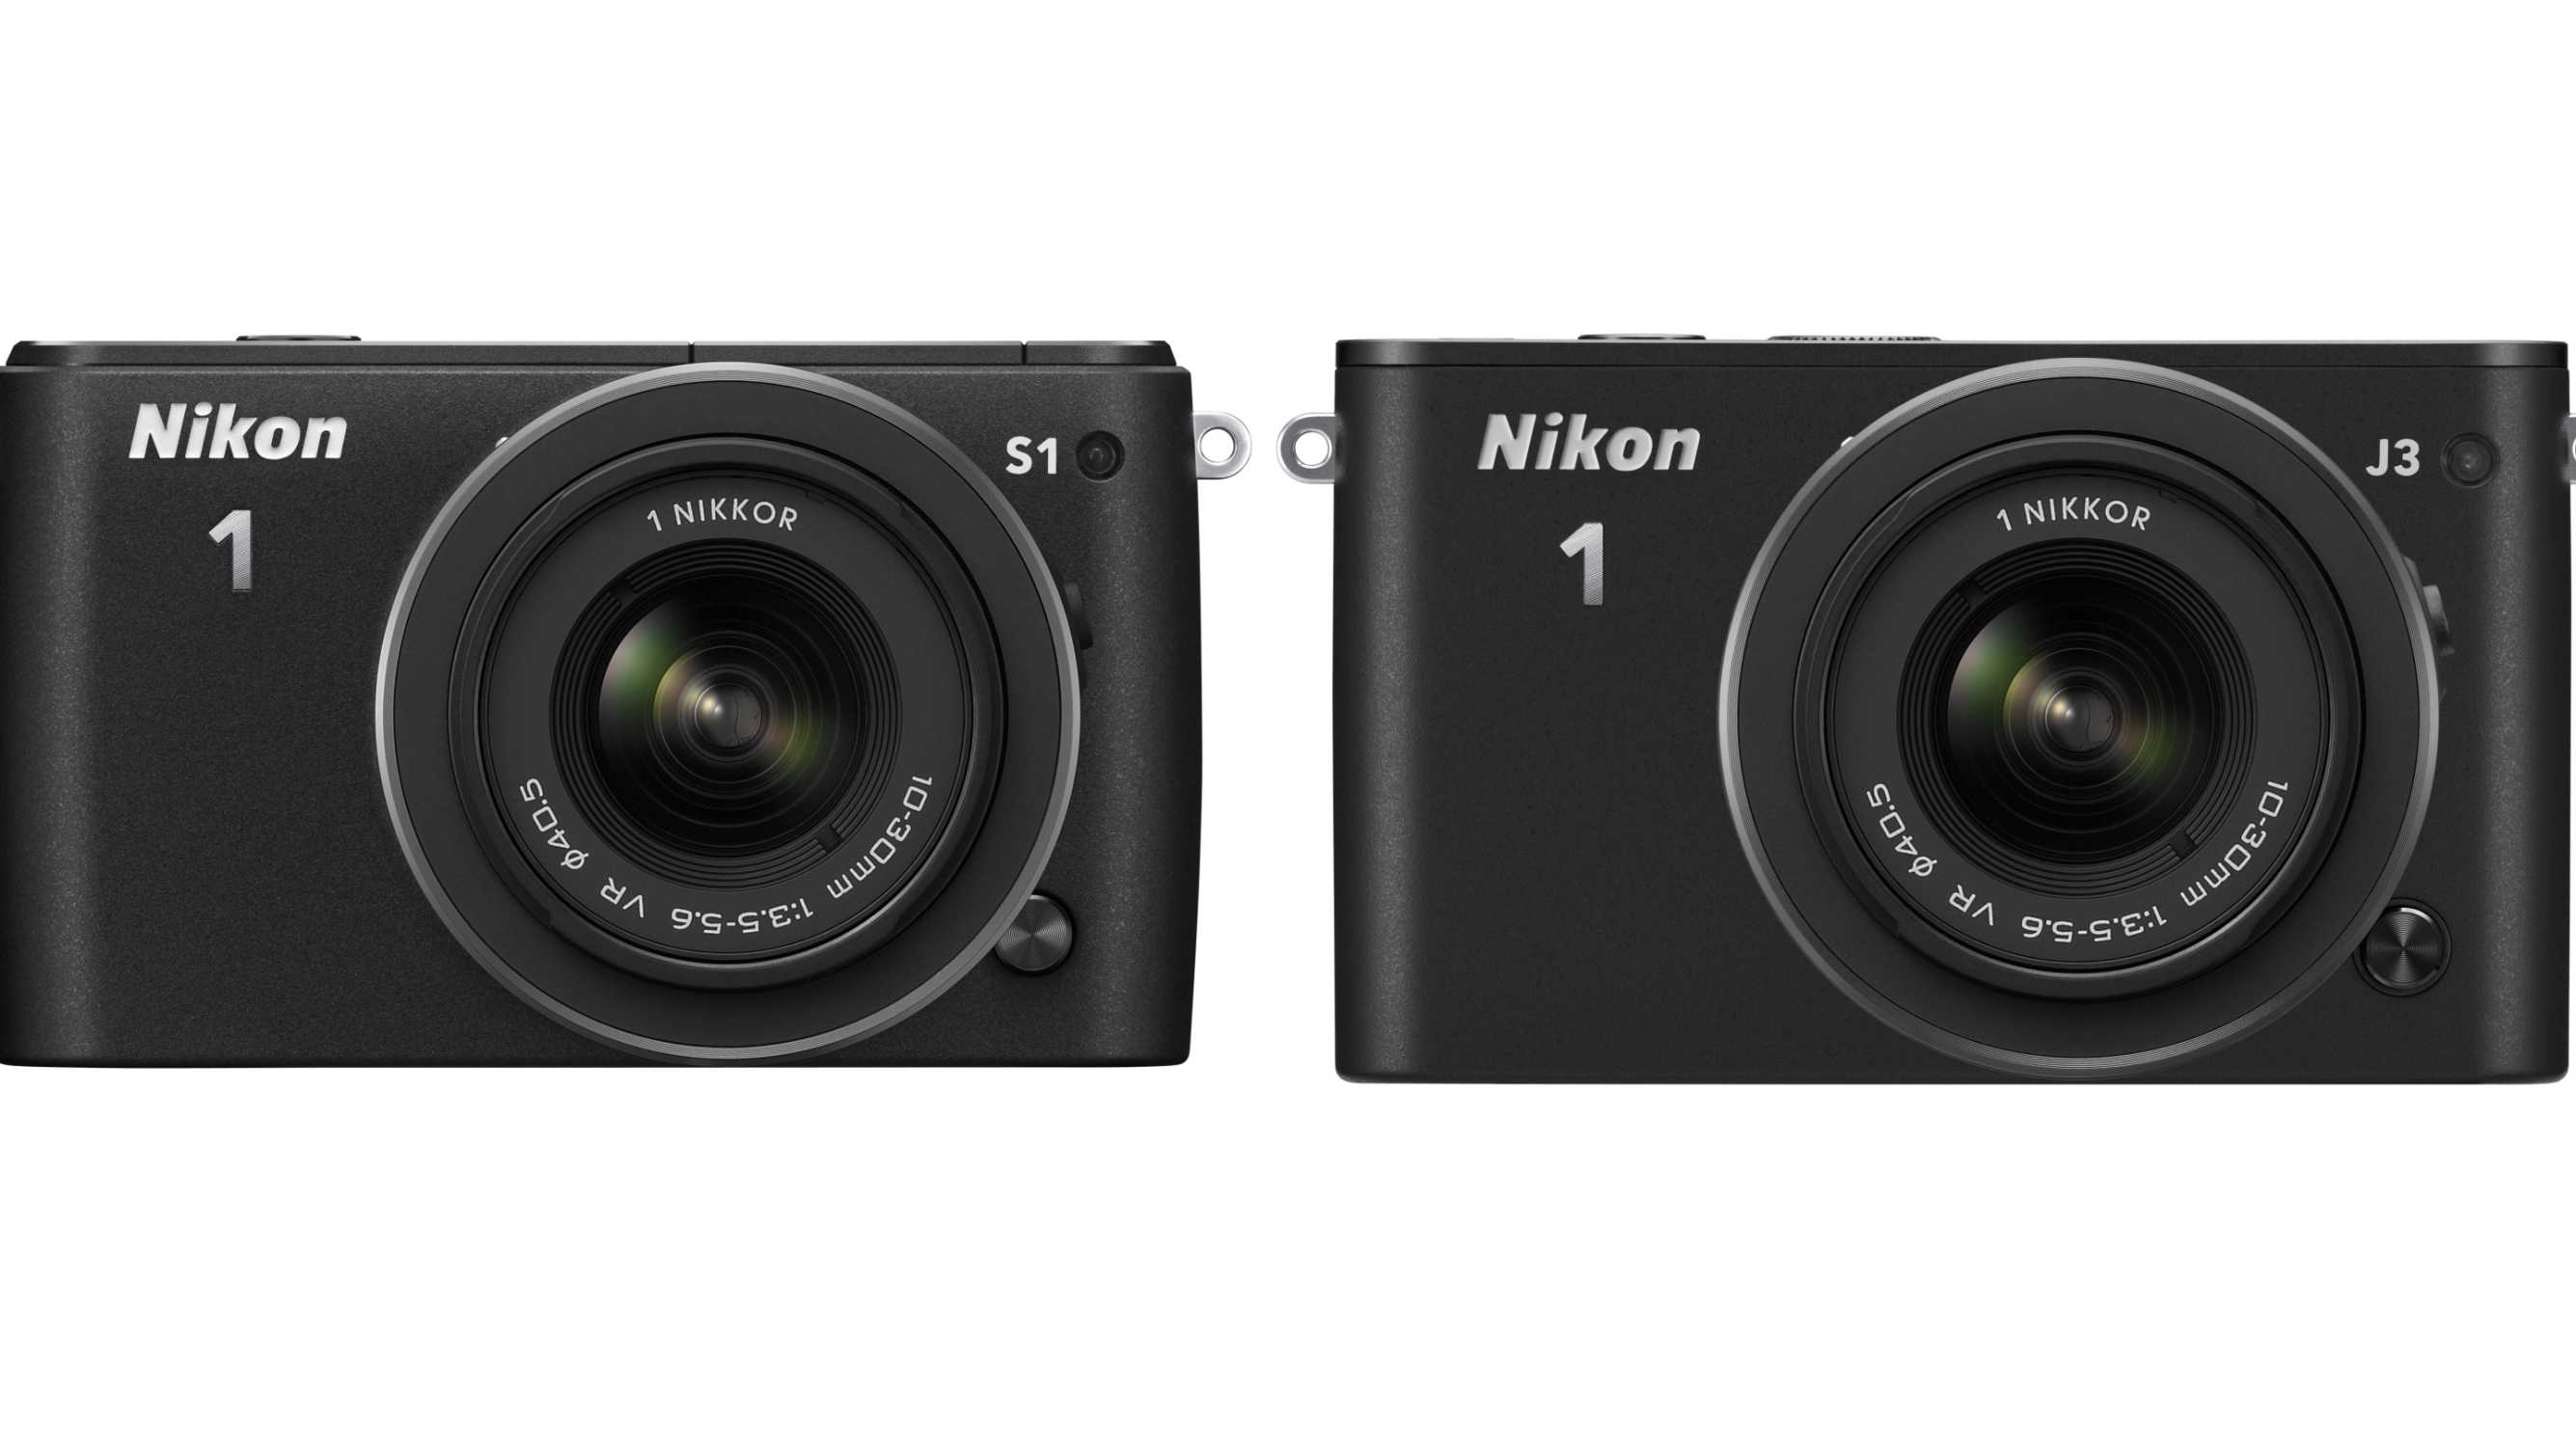 Kurz vorgestellt: Nikon 1 S1 und Nikon 1 J3